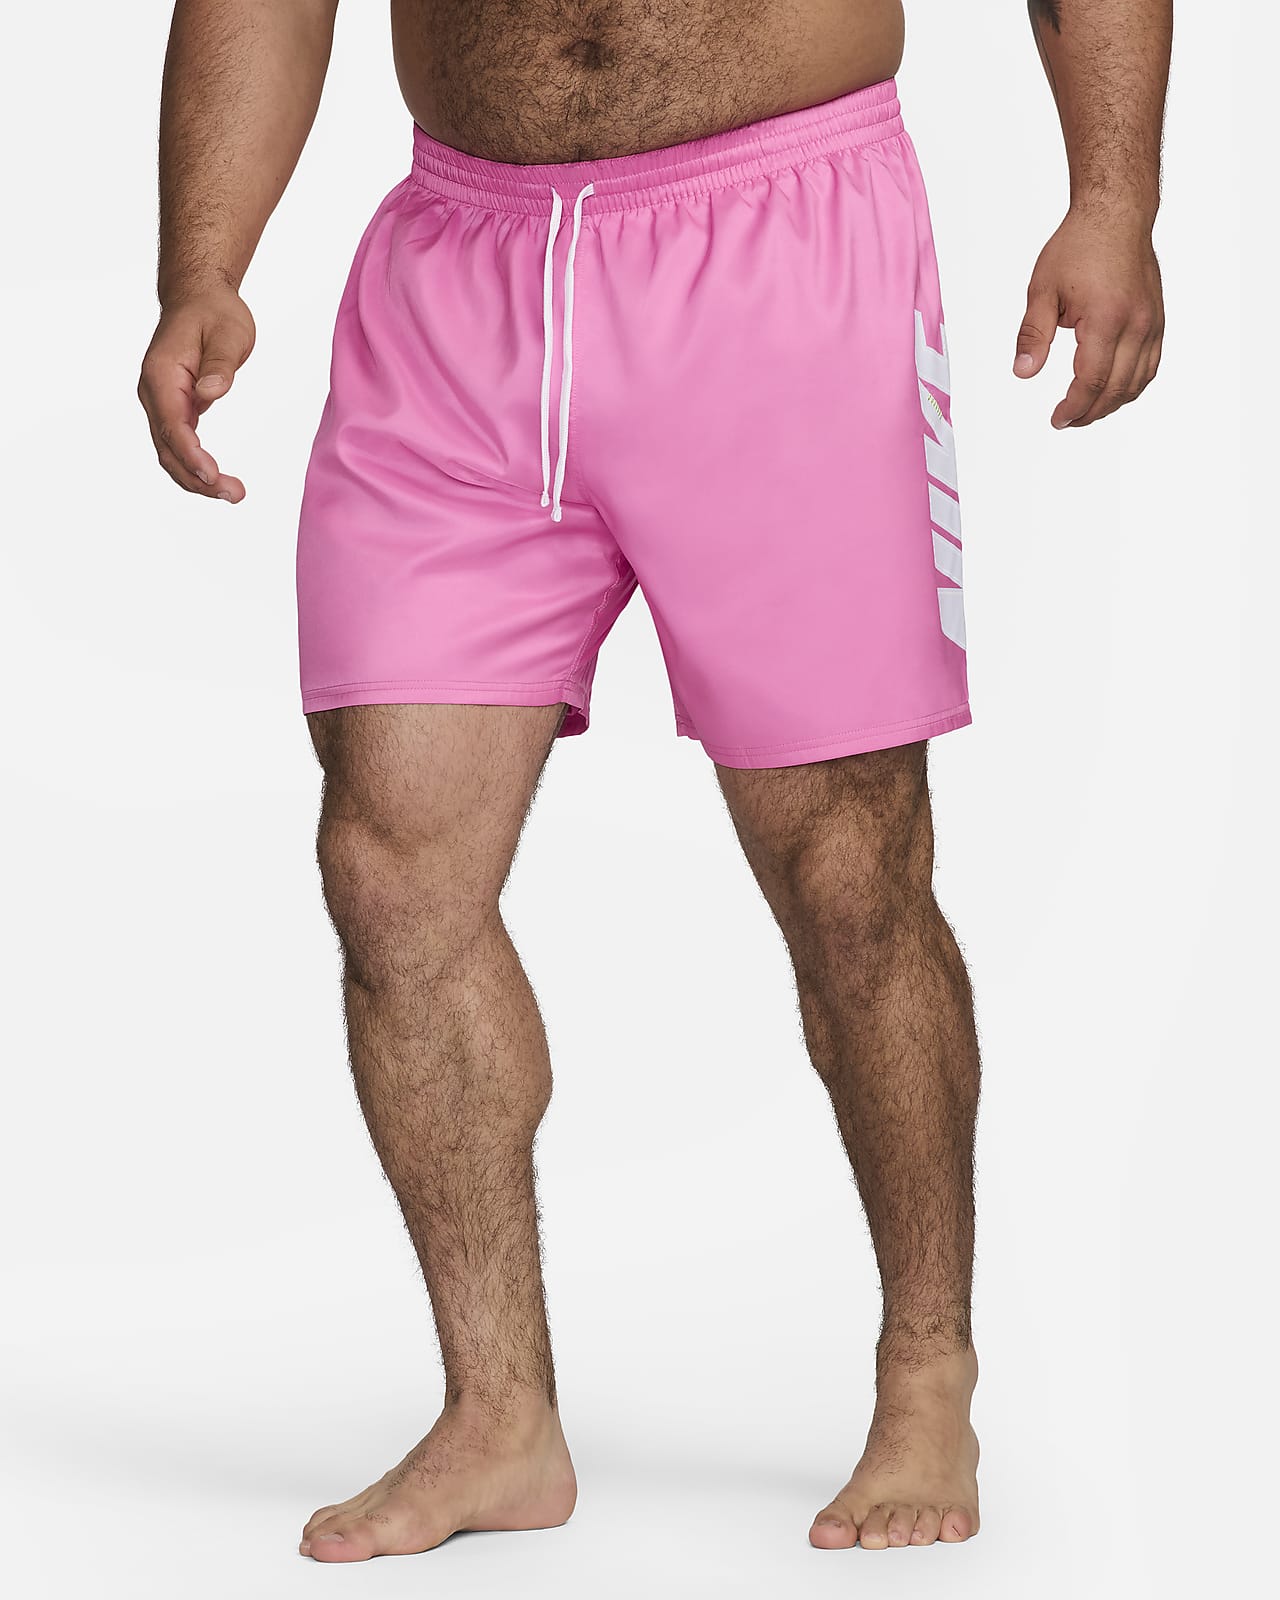 Shorts de voleibol de 23 cm (talla amplia) para hombre Natación Nike Big Block